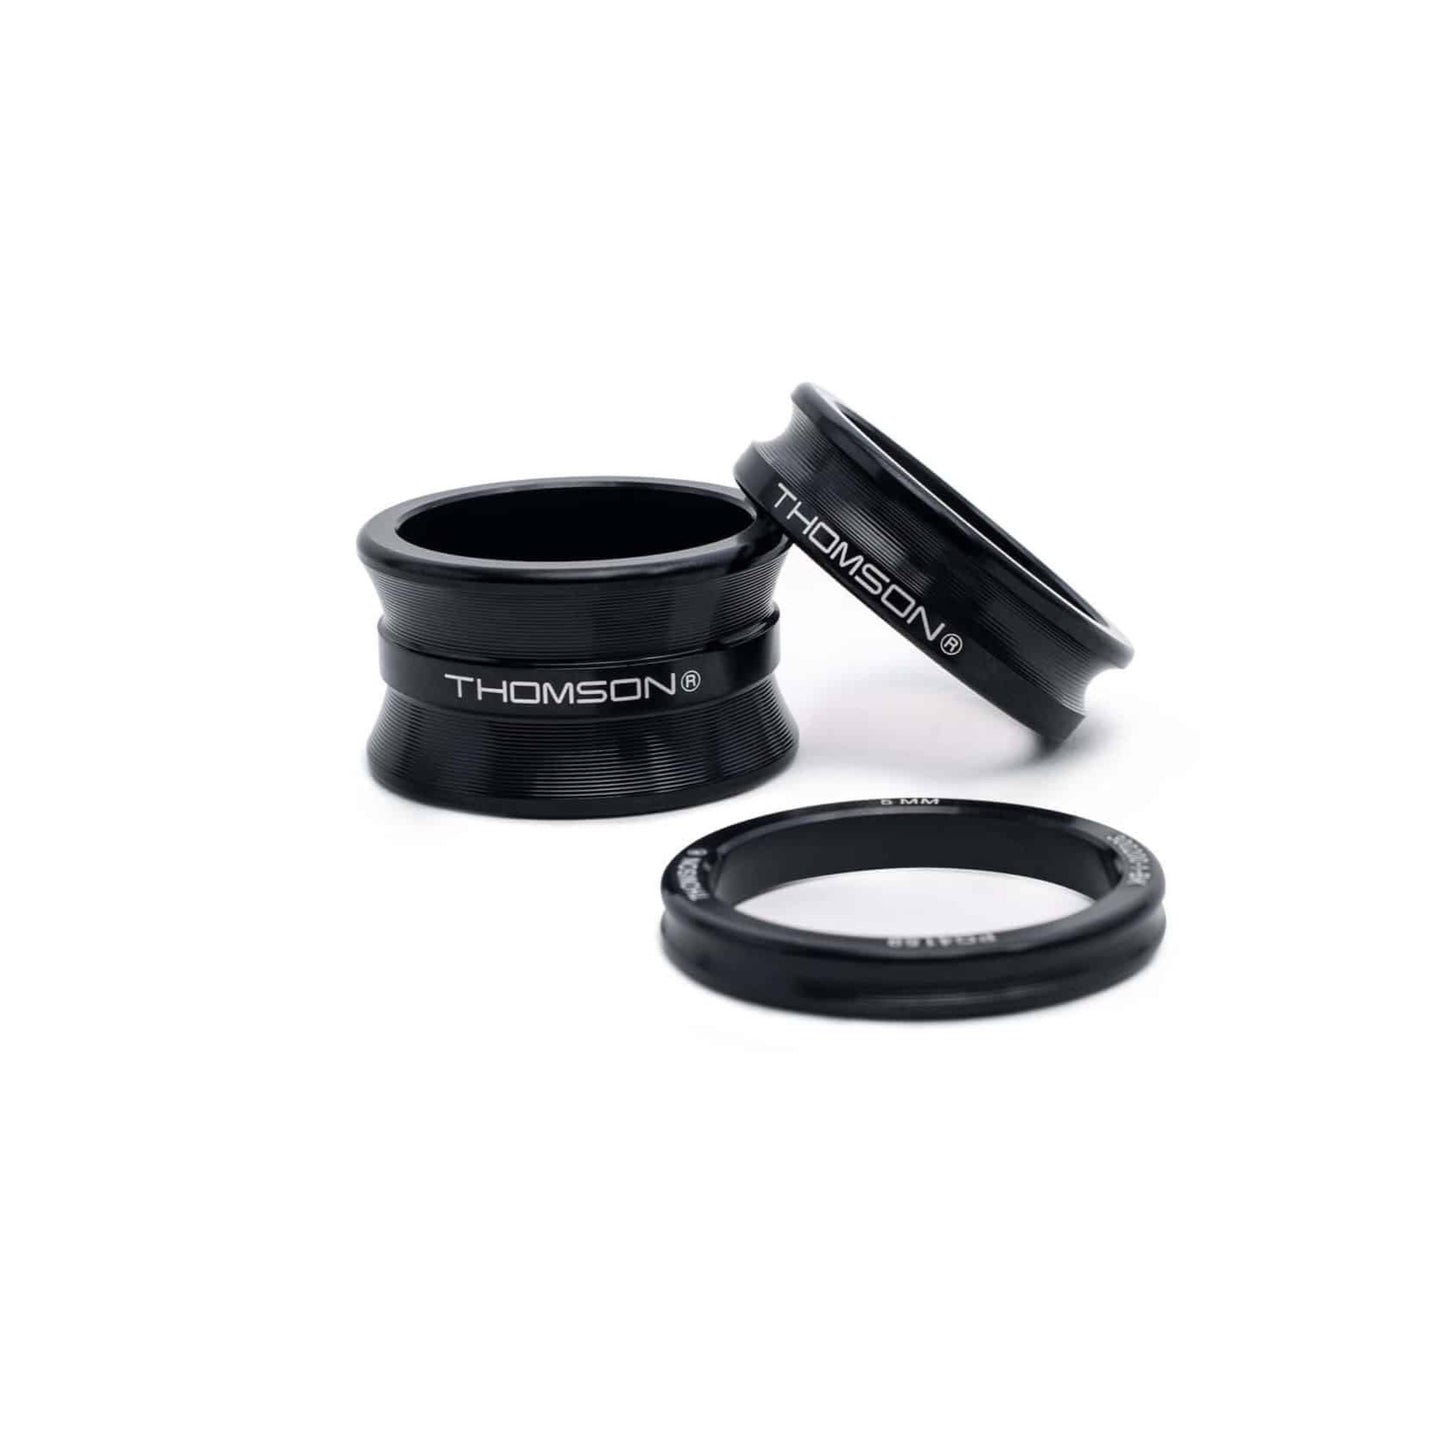 Thomson - Spacer Kit (black)